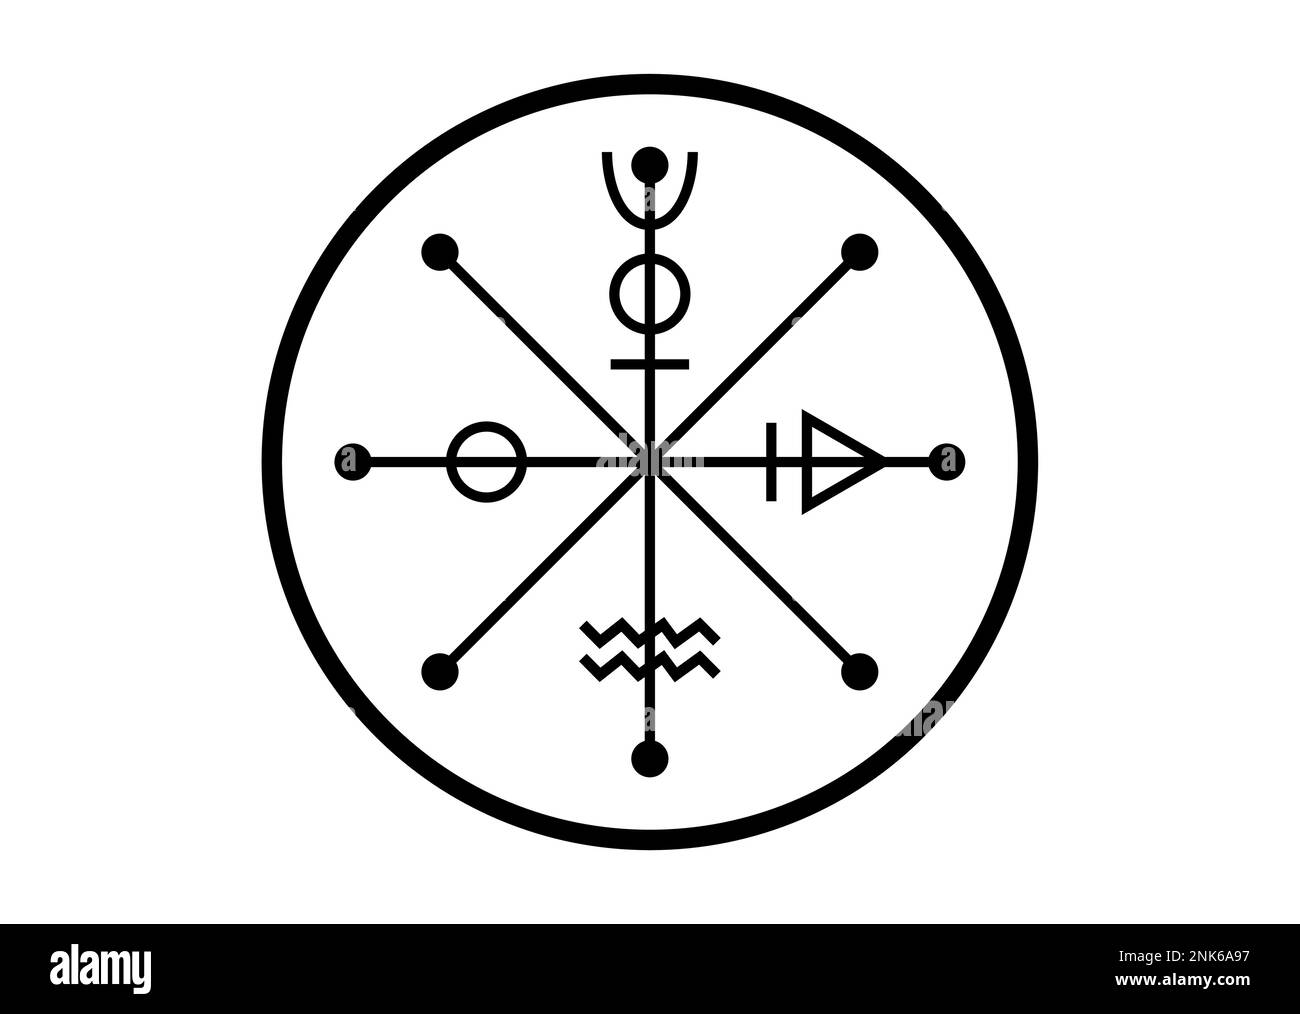 Das Rad der Fotune-Tarot-Symbol, weltweites altes Zeichen, der Zyklus des Lebens, magischer Hexentalisman-Glücksbringer, schwarzes Tattoo-Symbol heiliger Geometrie Stock Vektor